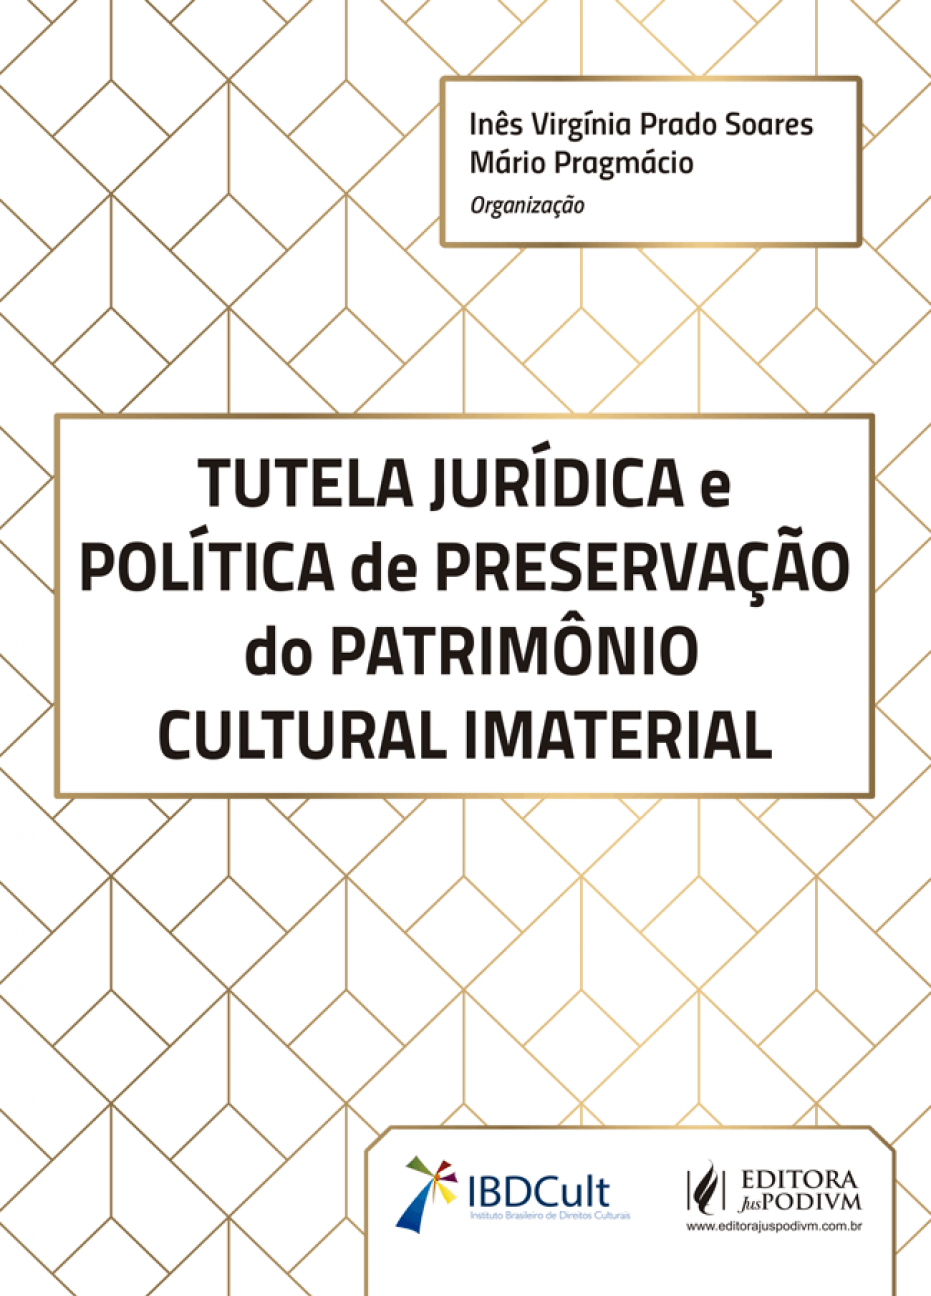 Tutela Jurídica e Política de Preservação do Patrimônio Cultural Imaterial